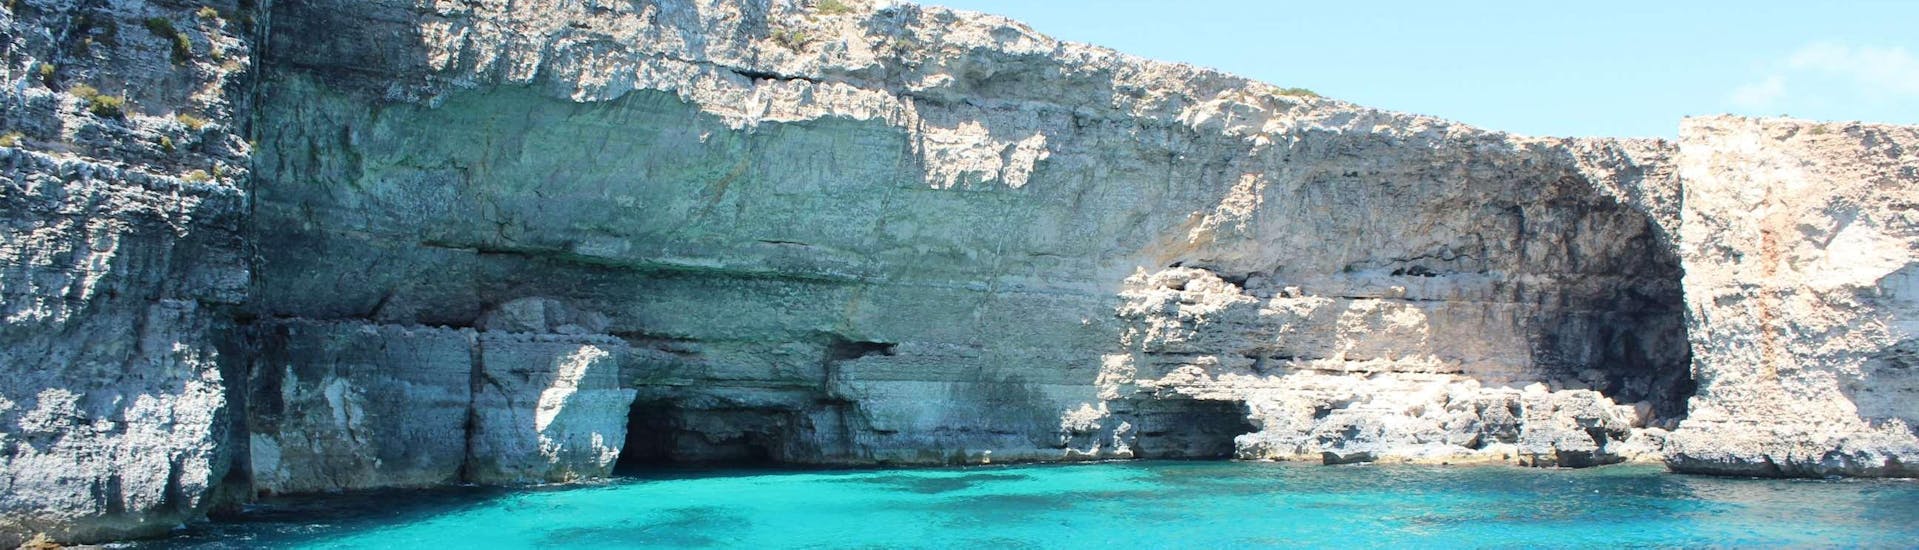 De verbazingwekkende kliffen van Comino die u kunt bewonderen tijdens de boottocht naar Gozo & Comino incl. Blue Lagoon.